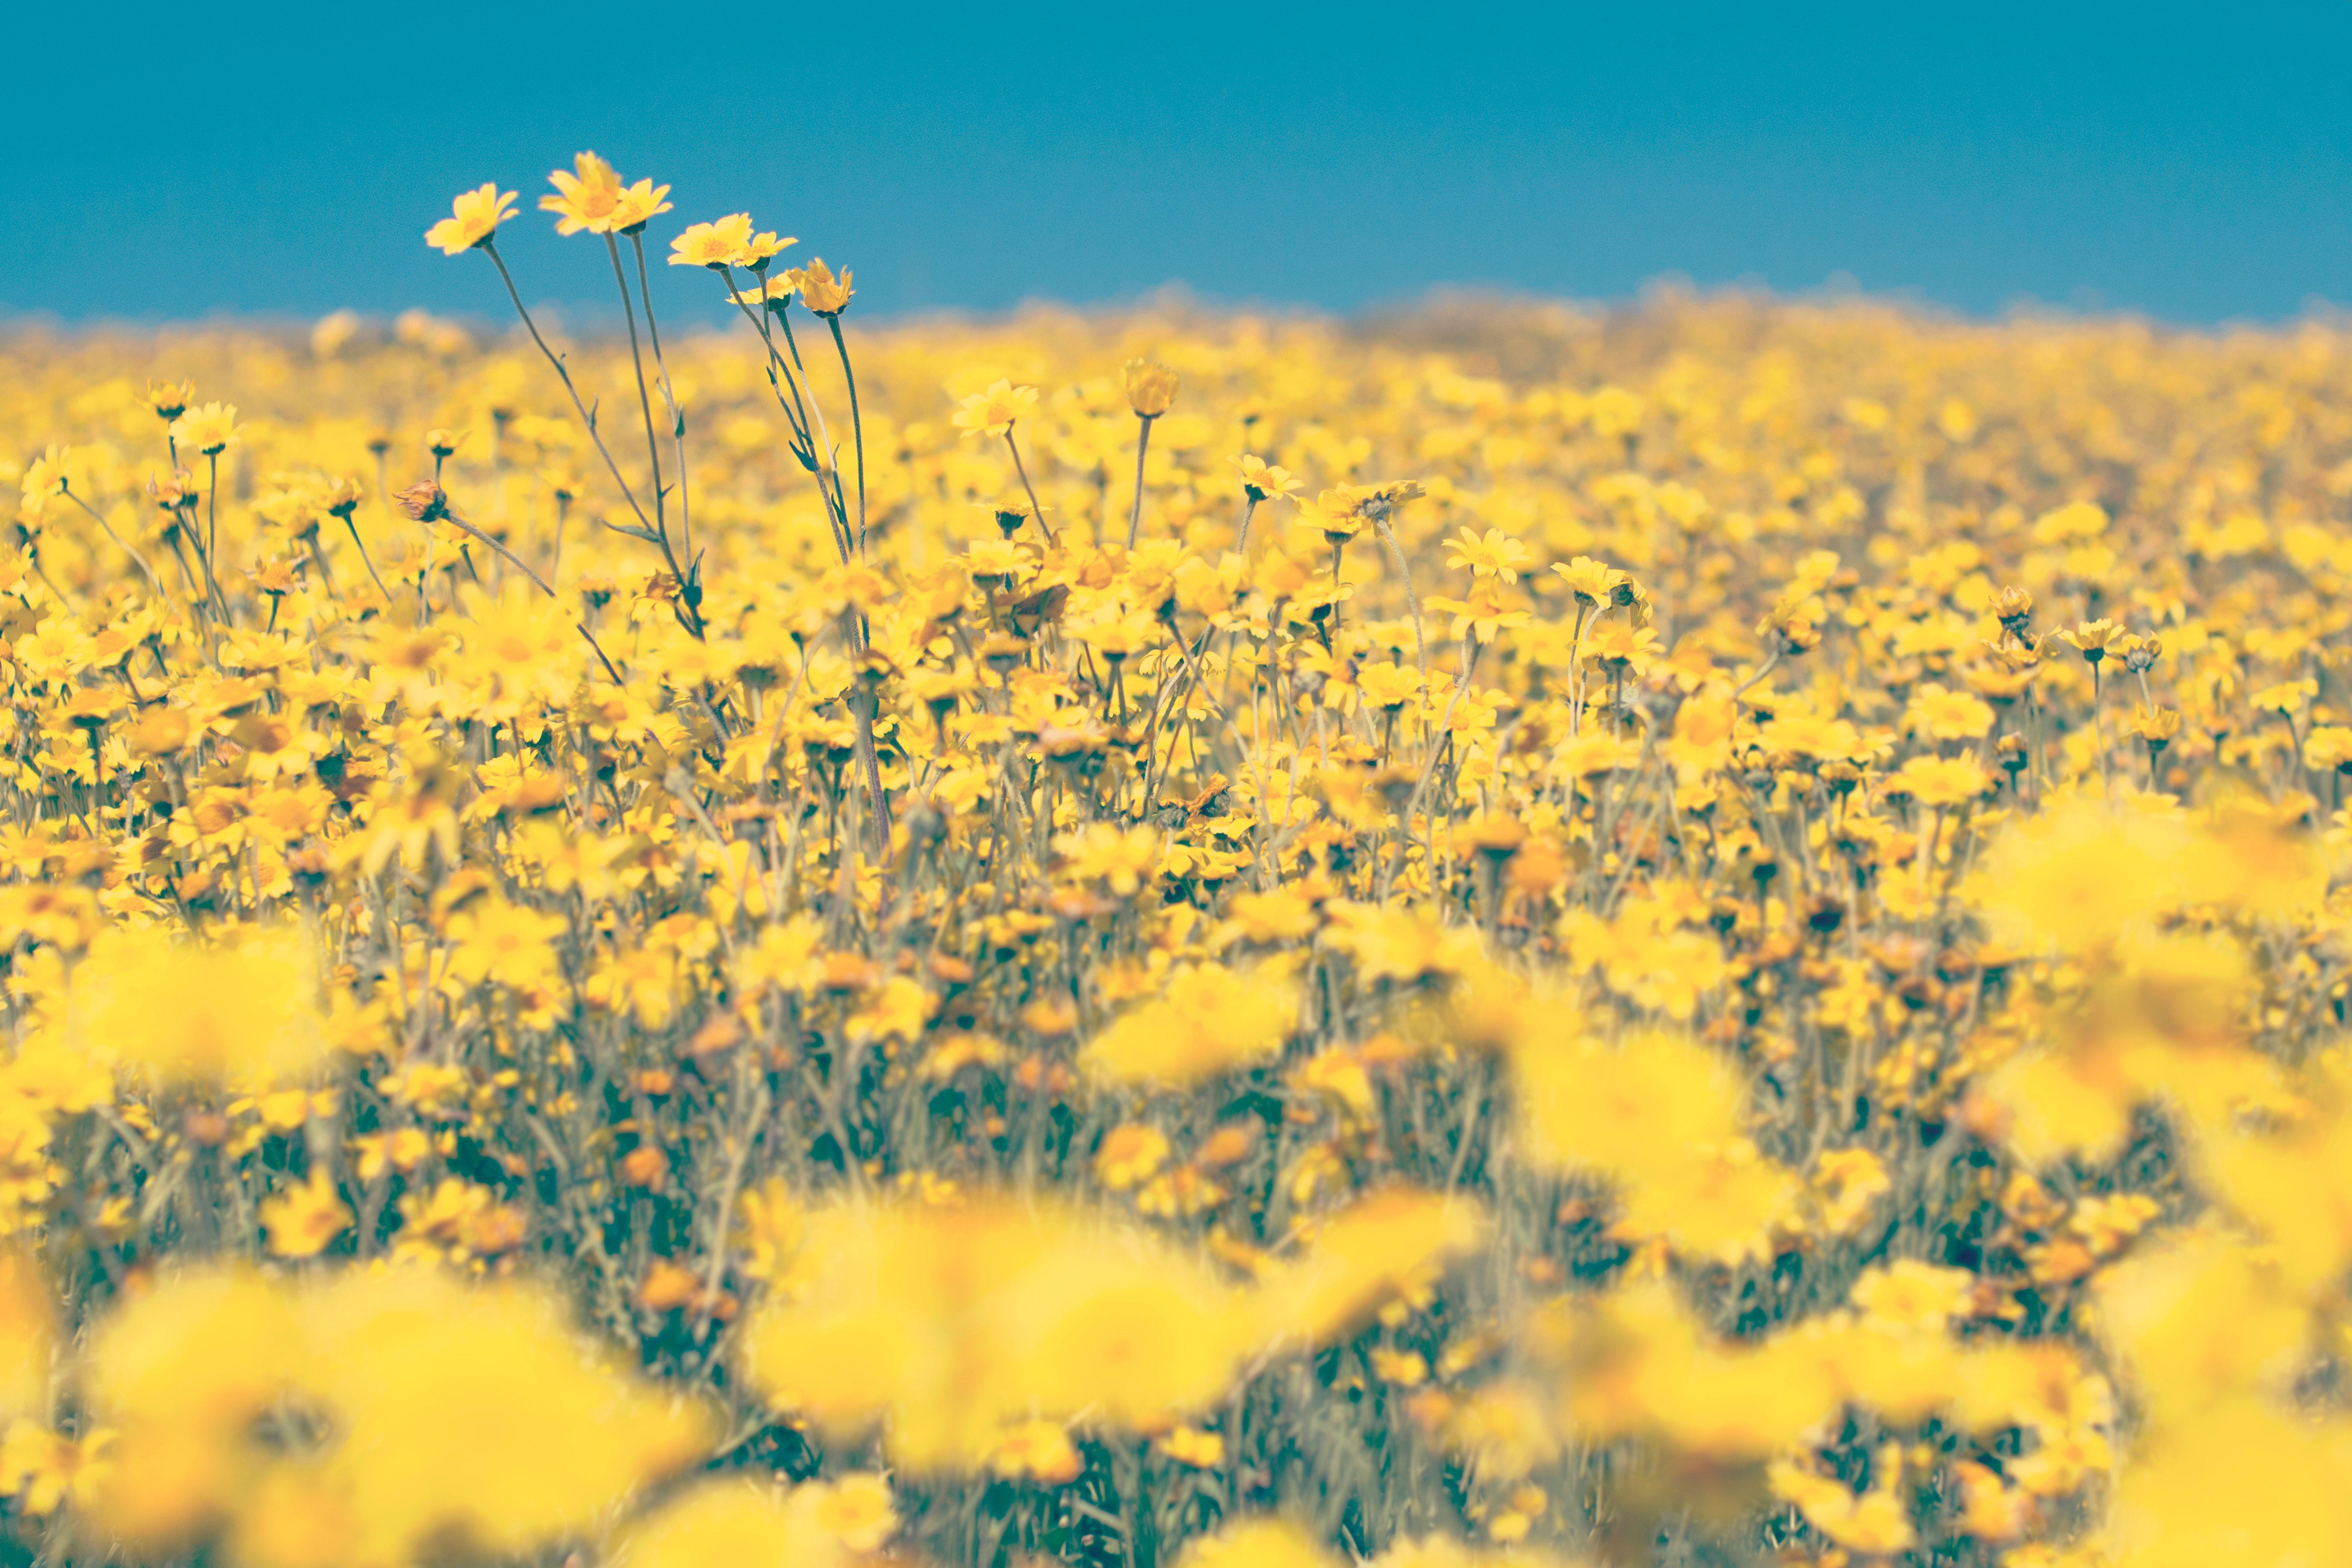 Hình nền hoa hướng dương aesthetic màu vàng: Hình nền hướng dương màu vàng tươi sáng sẽ khiến bạn cảm thấy vui vẻ và năng động. Quan sát những bông hoa được xếp hàng ngay trên màn hình điện thoại hay máy tính của bạn sẽ giúp bạn giảm stress và cảm thấy thư giãn hơn.